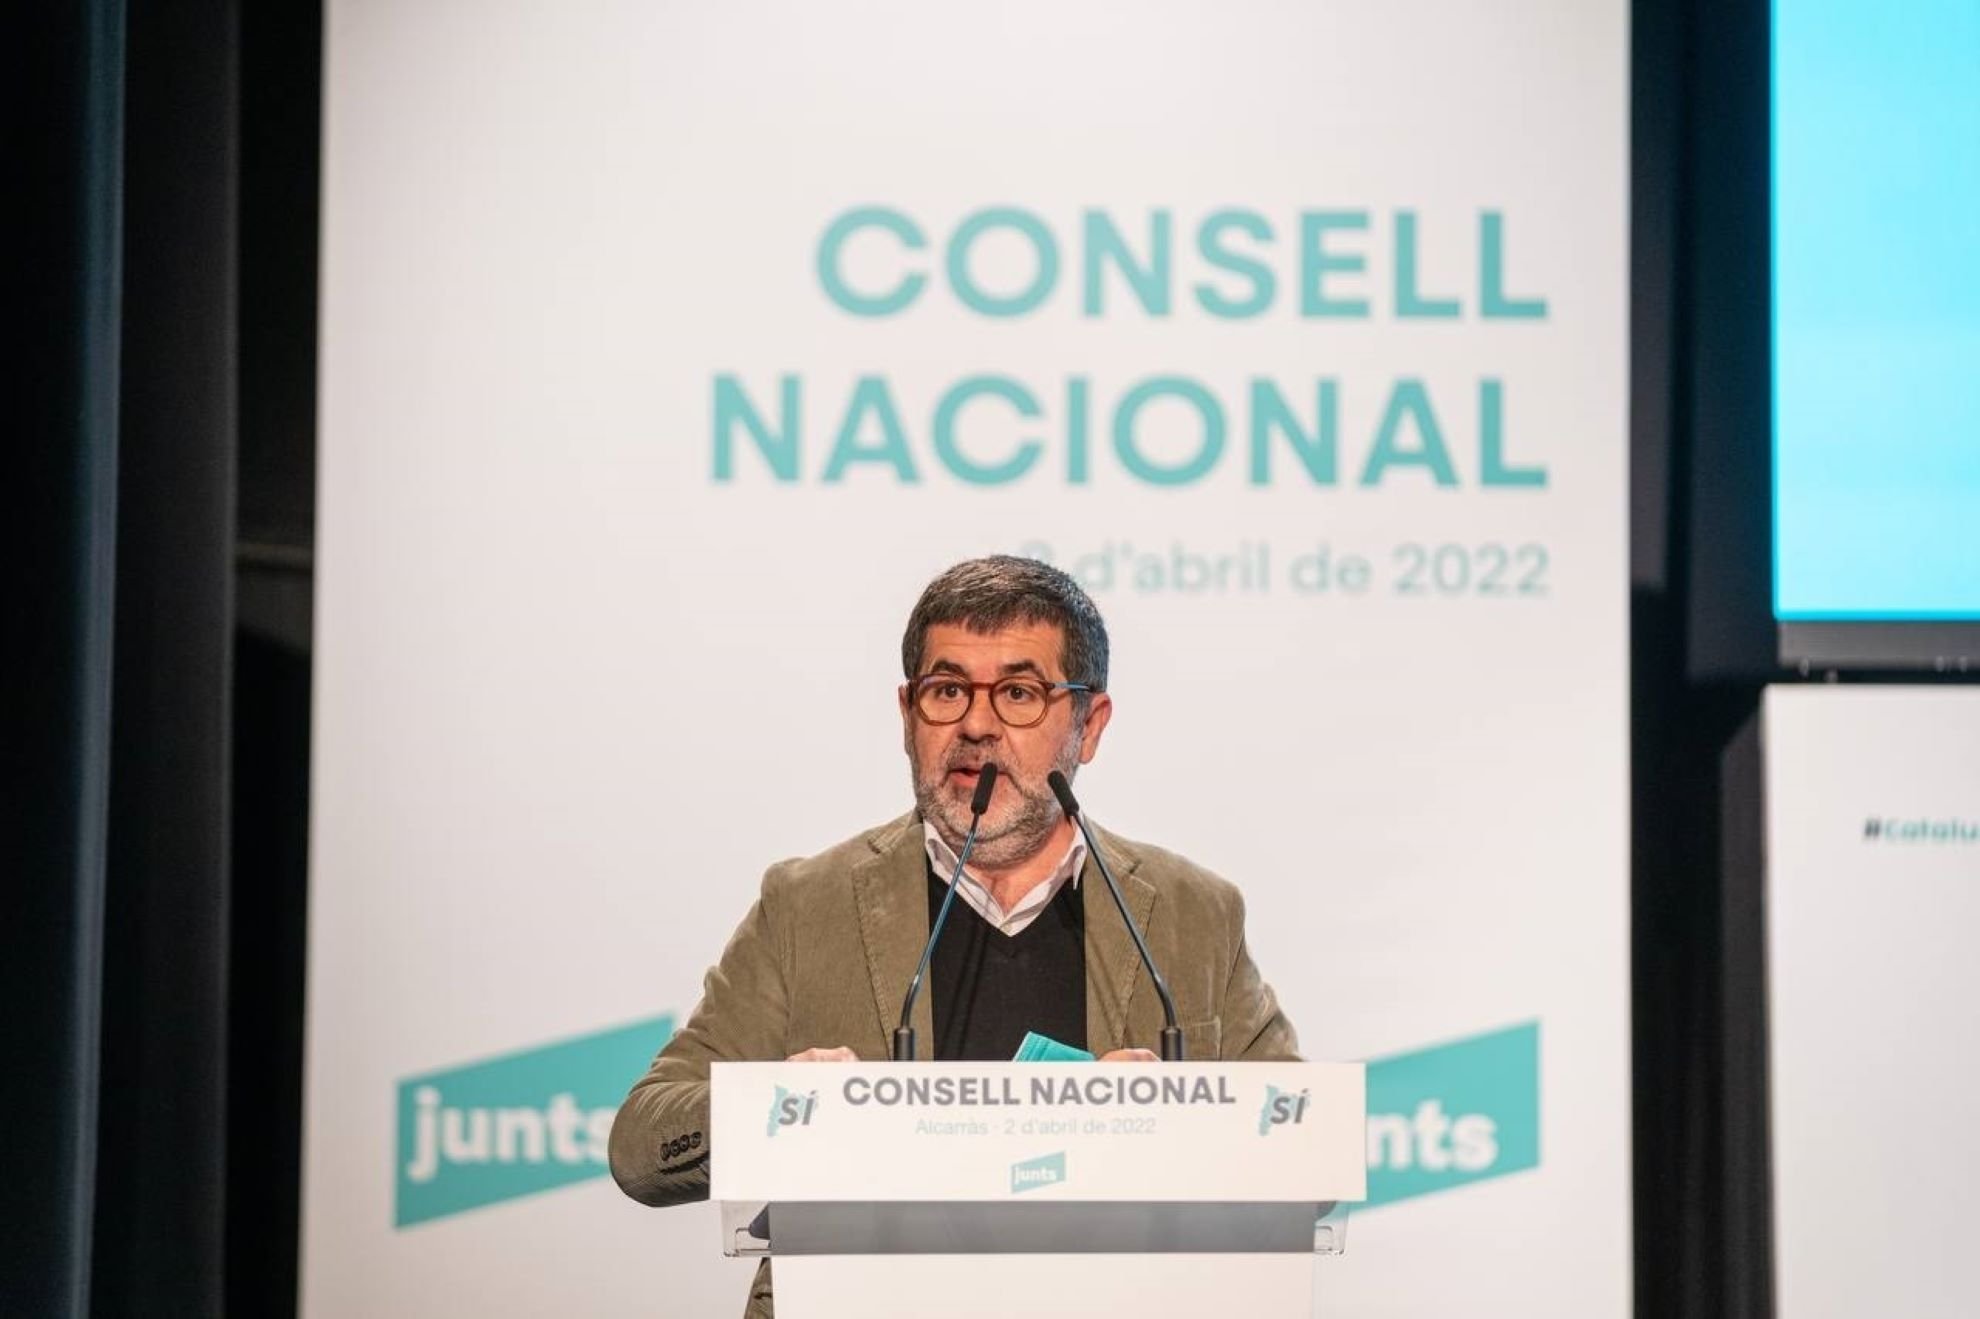 Jordi Sànchez i l'anunci de Moncloa: "Certificat l’espionatge contra l’independentisme"